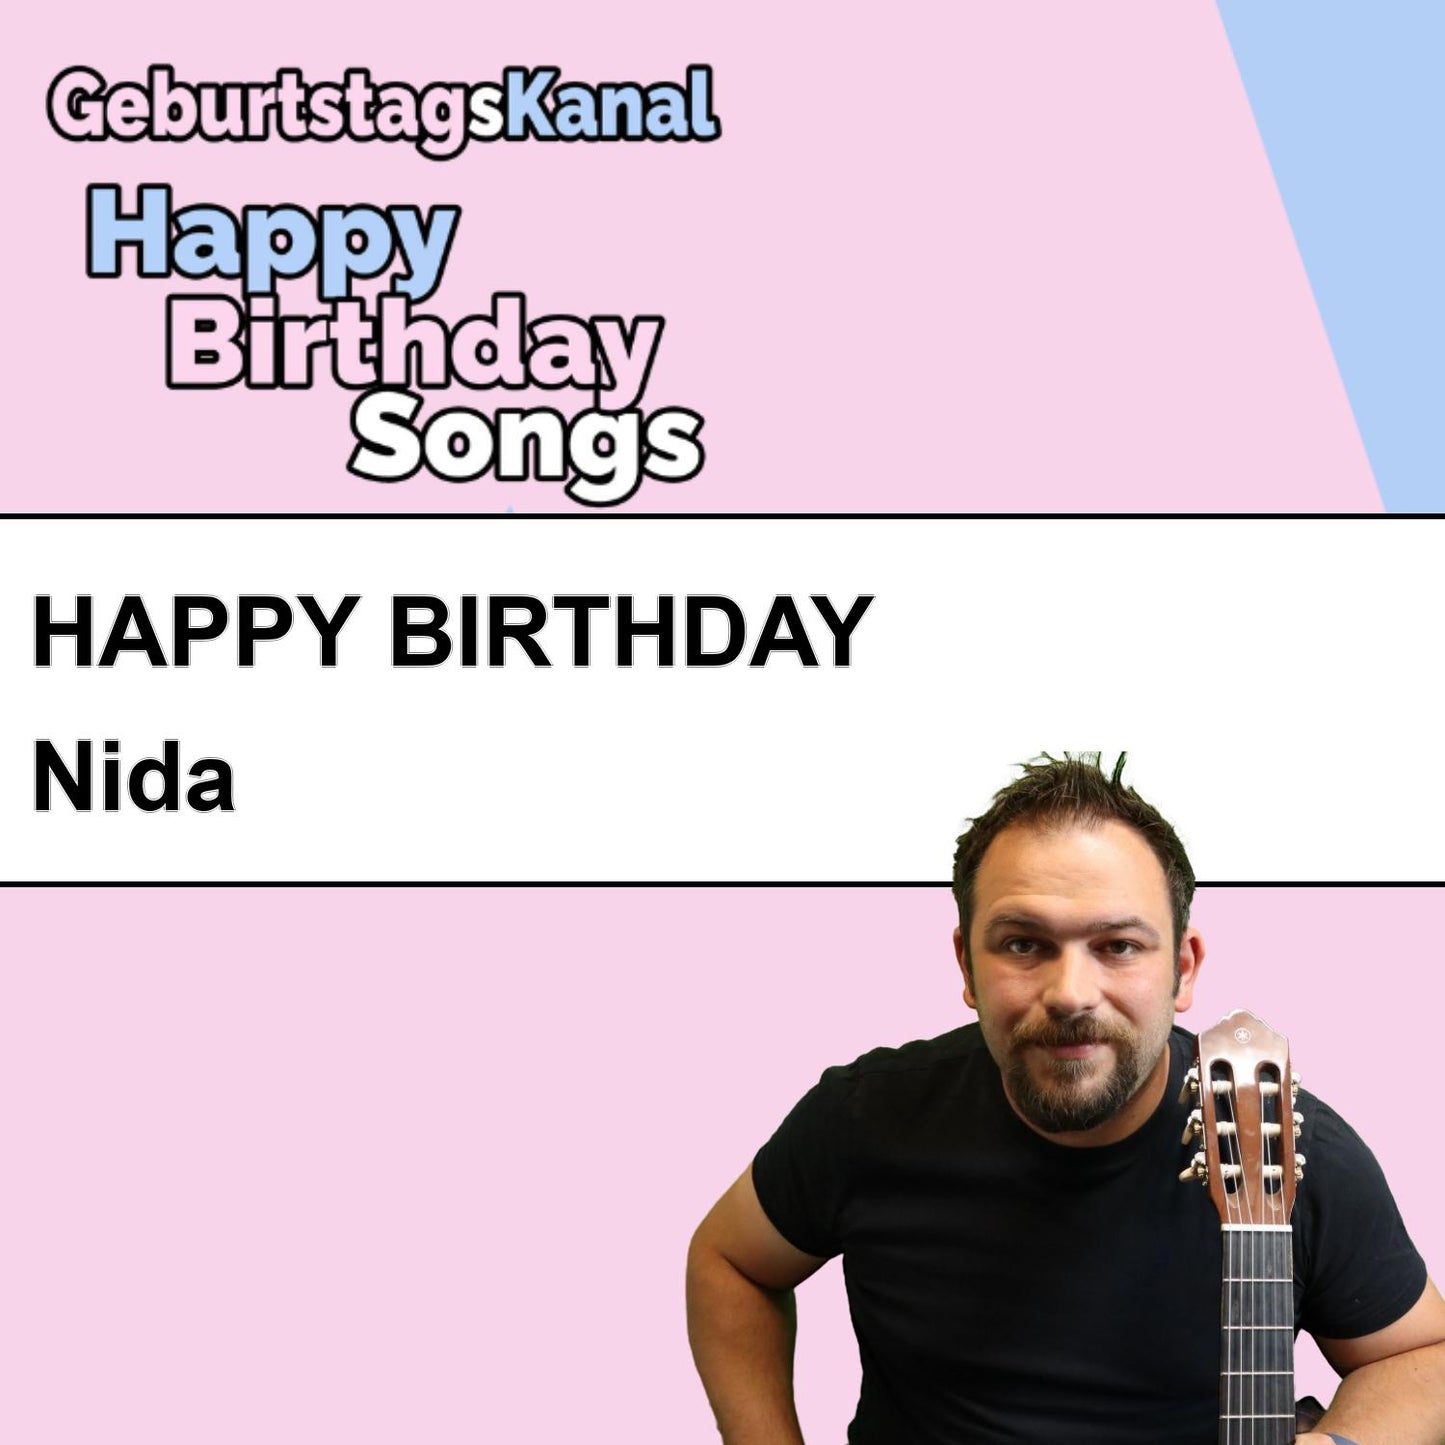 Produktbild Happy Birthday to you Nida mit Wunschgrußbotschaft